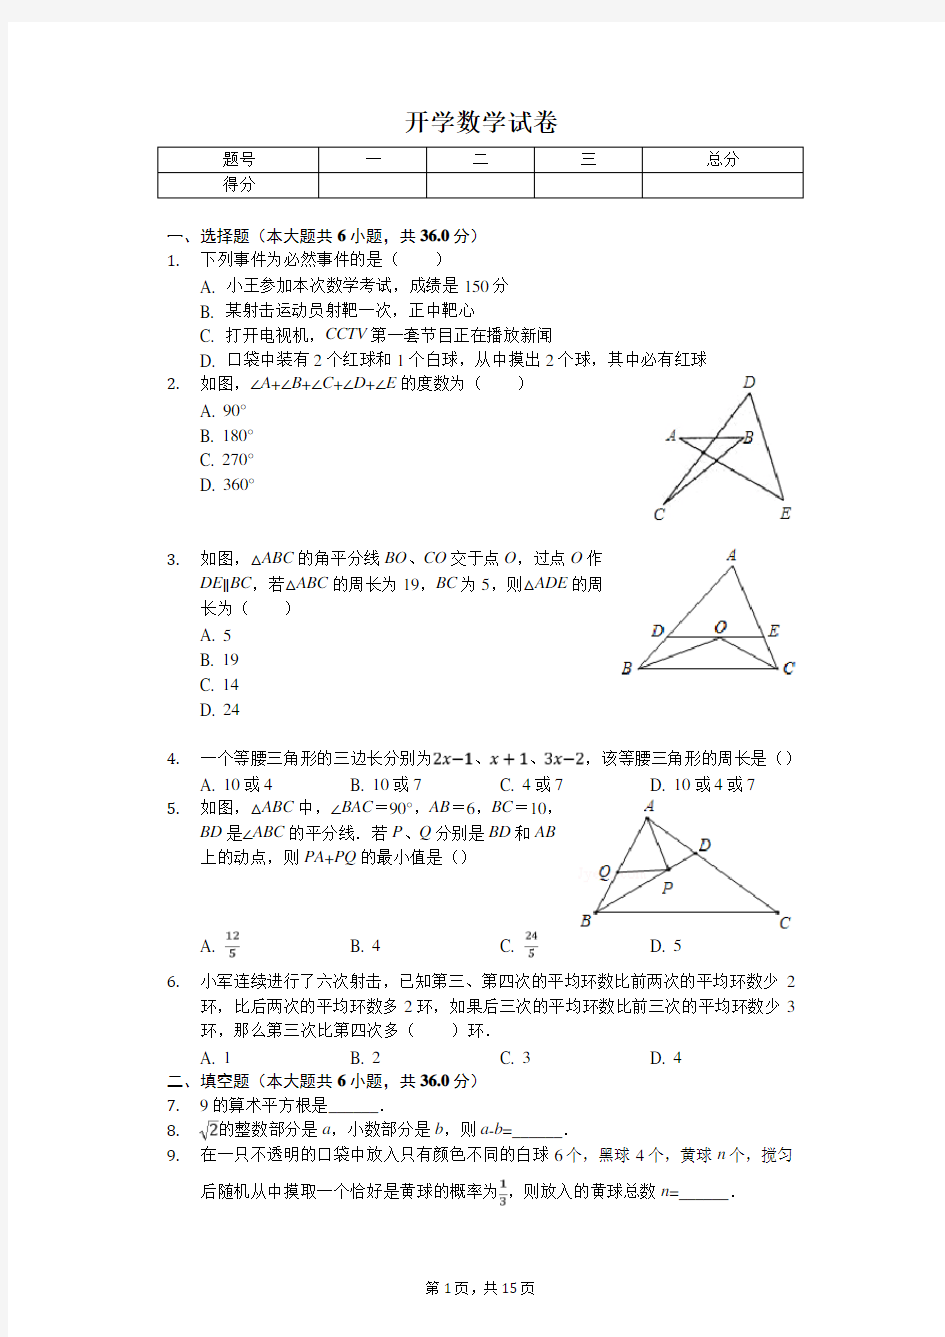 2020年重庆一中八年级(上)开学数学试卷